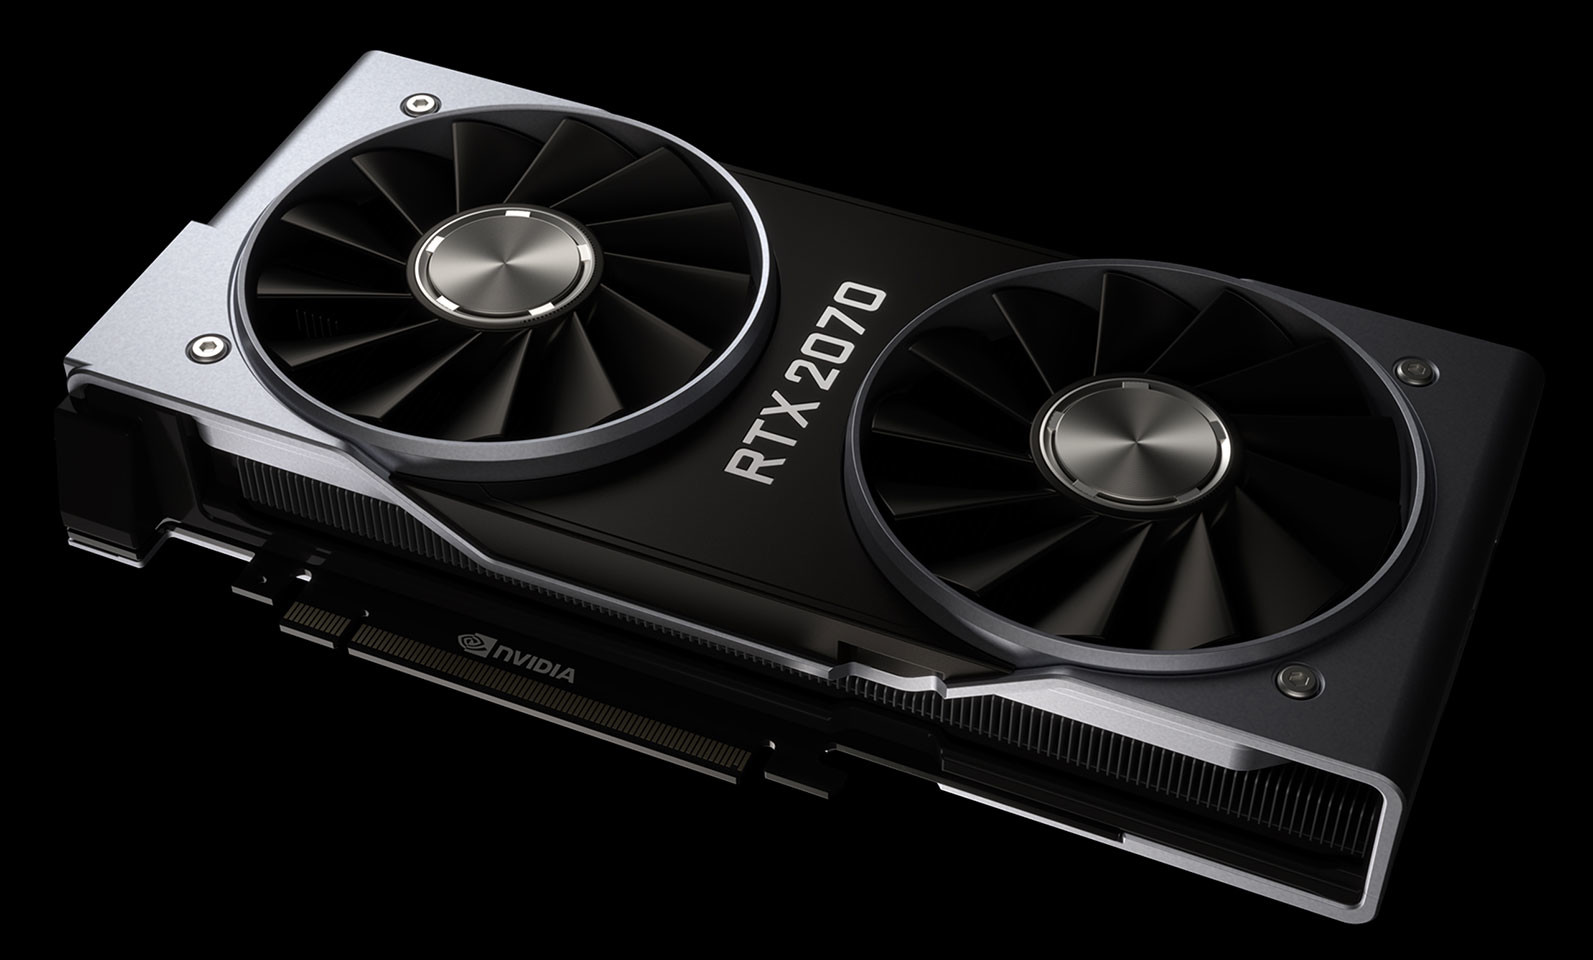 Radeon RX 5700 stok sıkıntısı GeForce RTX 2070 için avantaja dönüşüyor